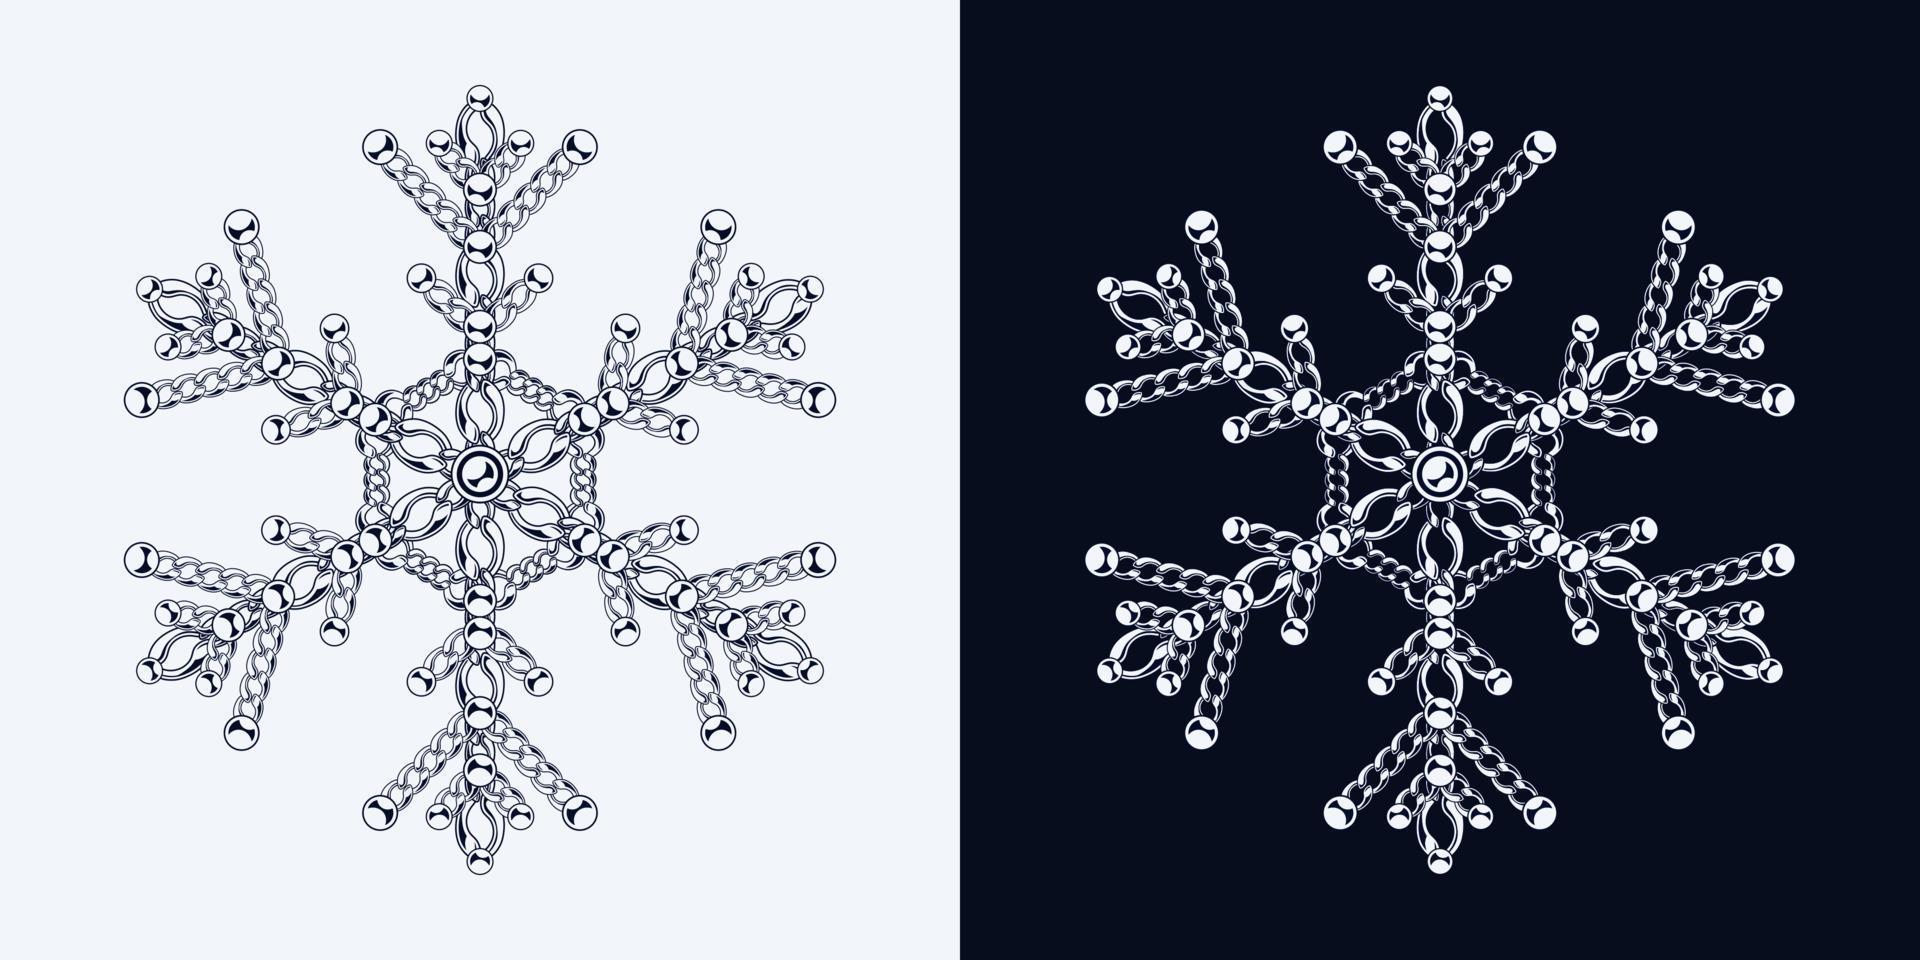 flocon de neige monochrome fantaisie composé de chaînes de bijoux avec des perles boules. illustration de bijou élégante pour les soldes d'hiver, noël, vacances du nouvel an, décoration de cadeaux. vecteur